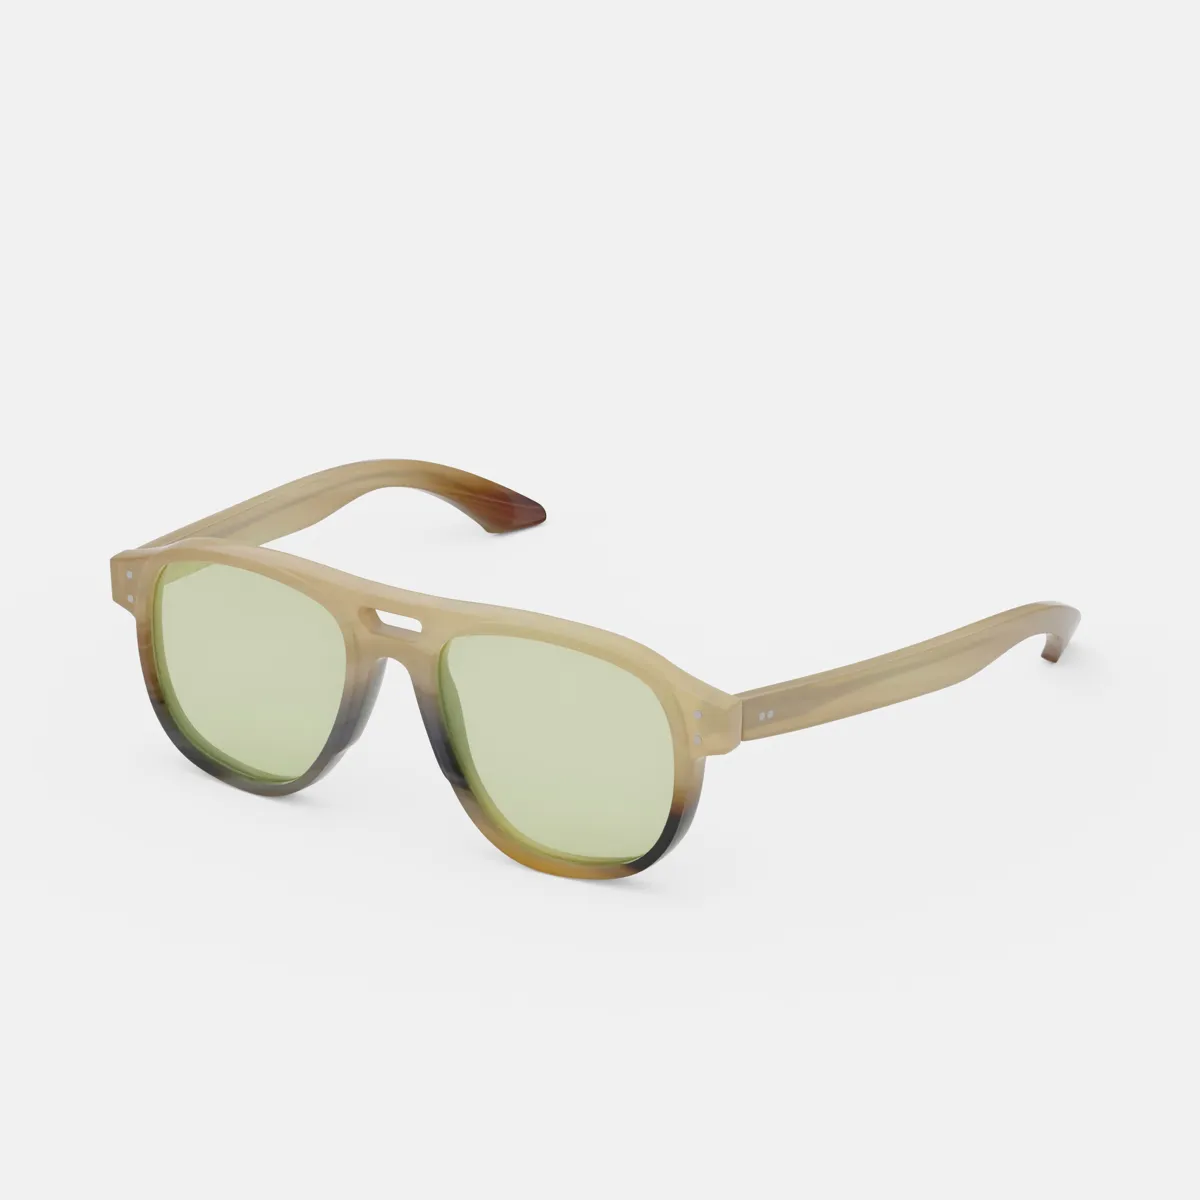 Glama Aviator Sunglasses